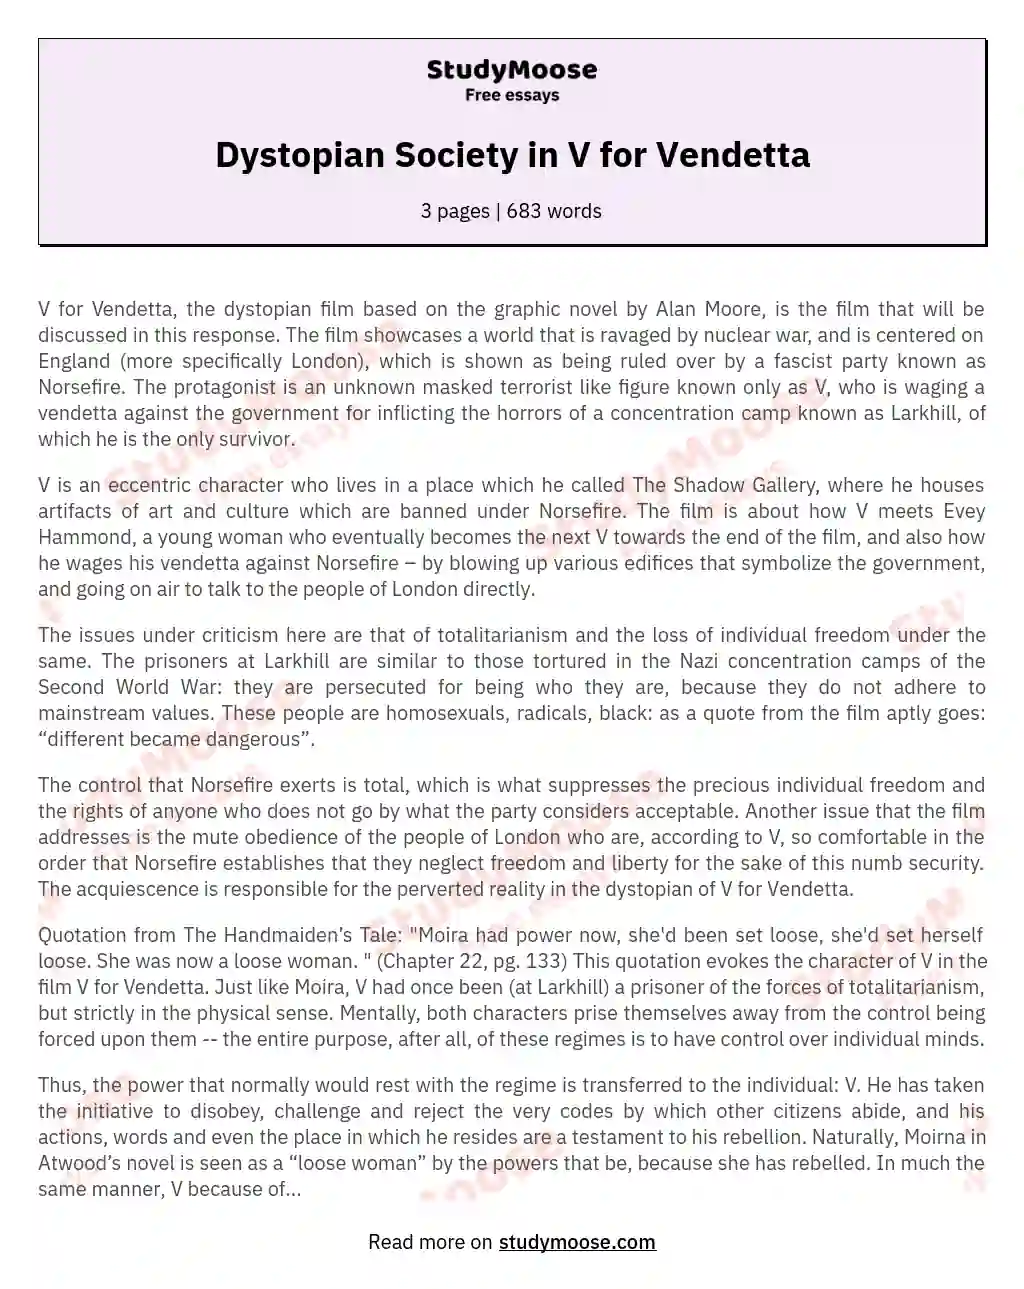 Dystopian Society in V for Vendetta